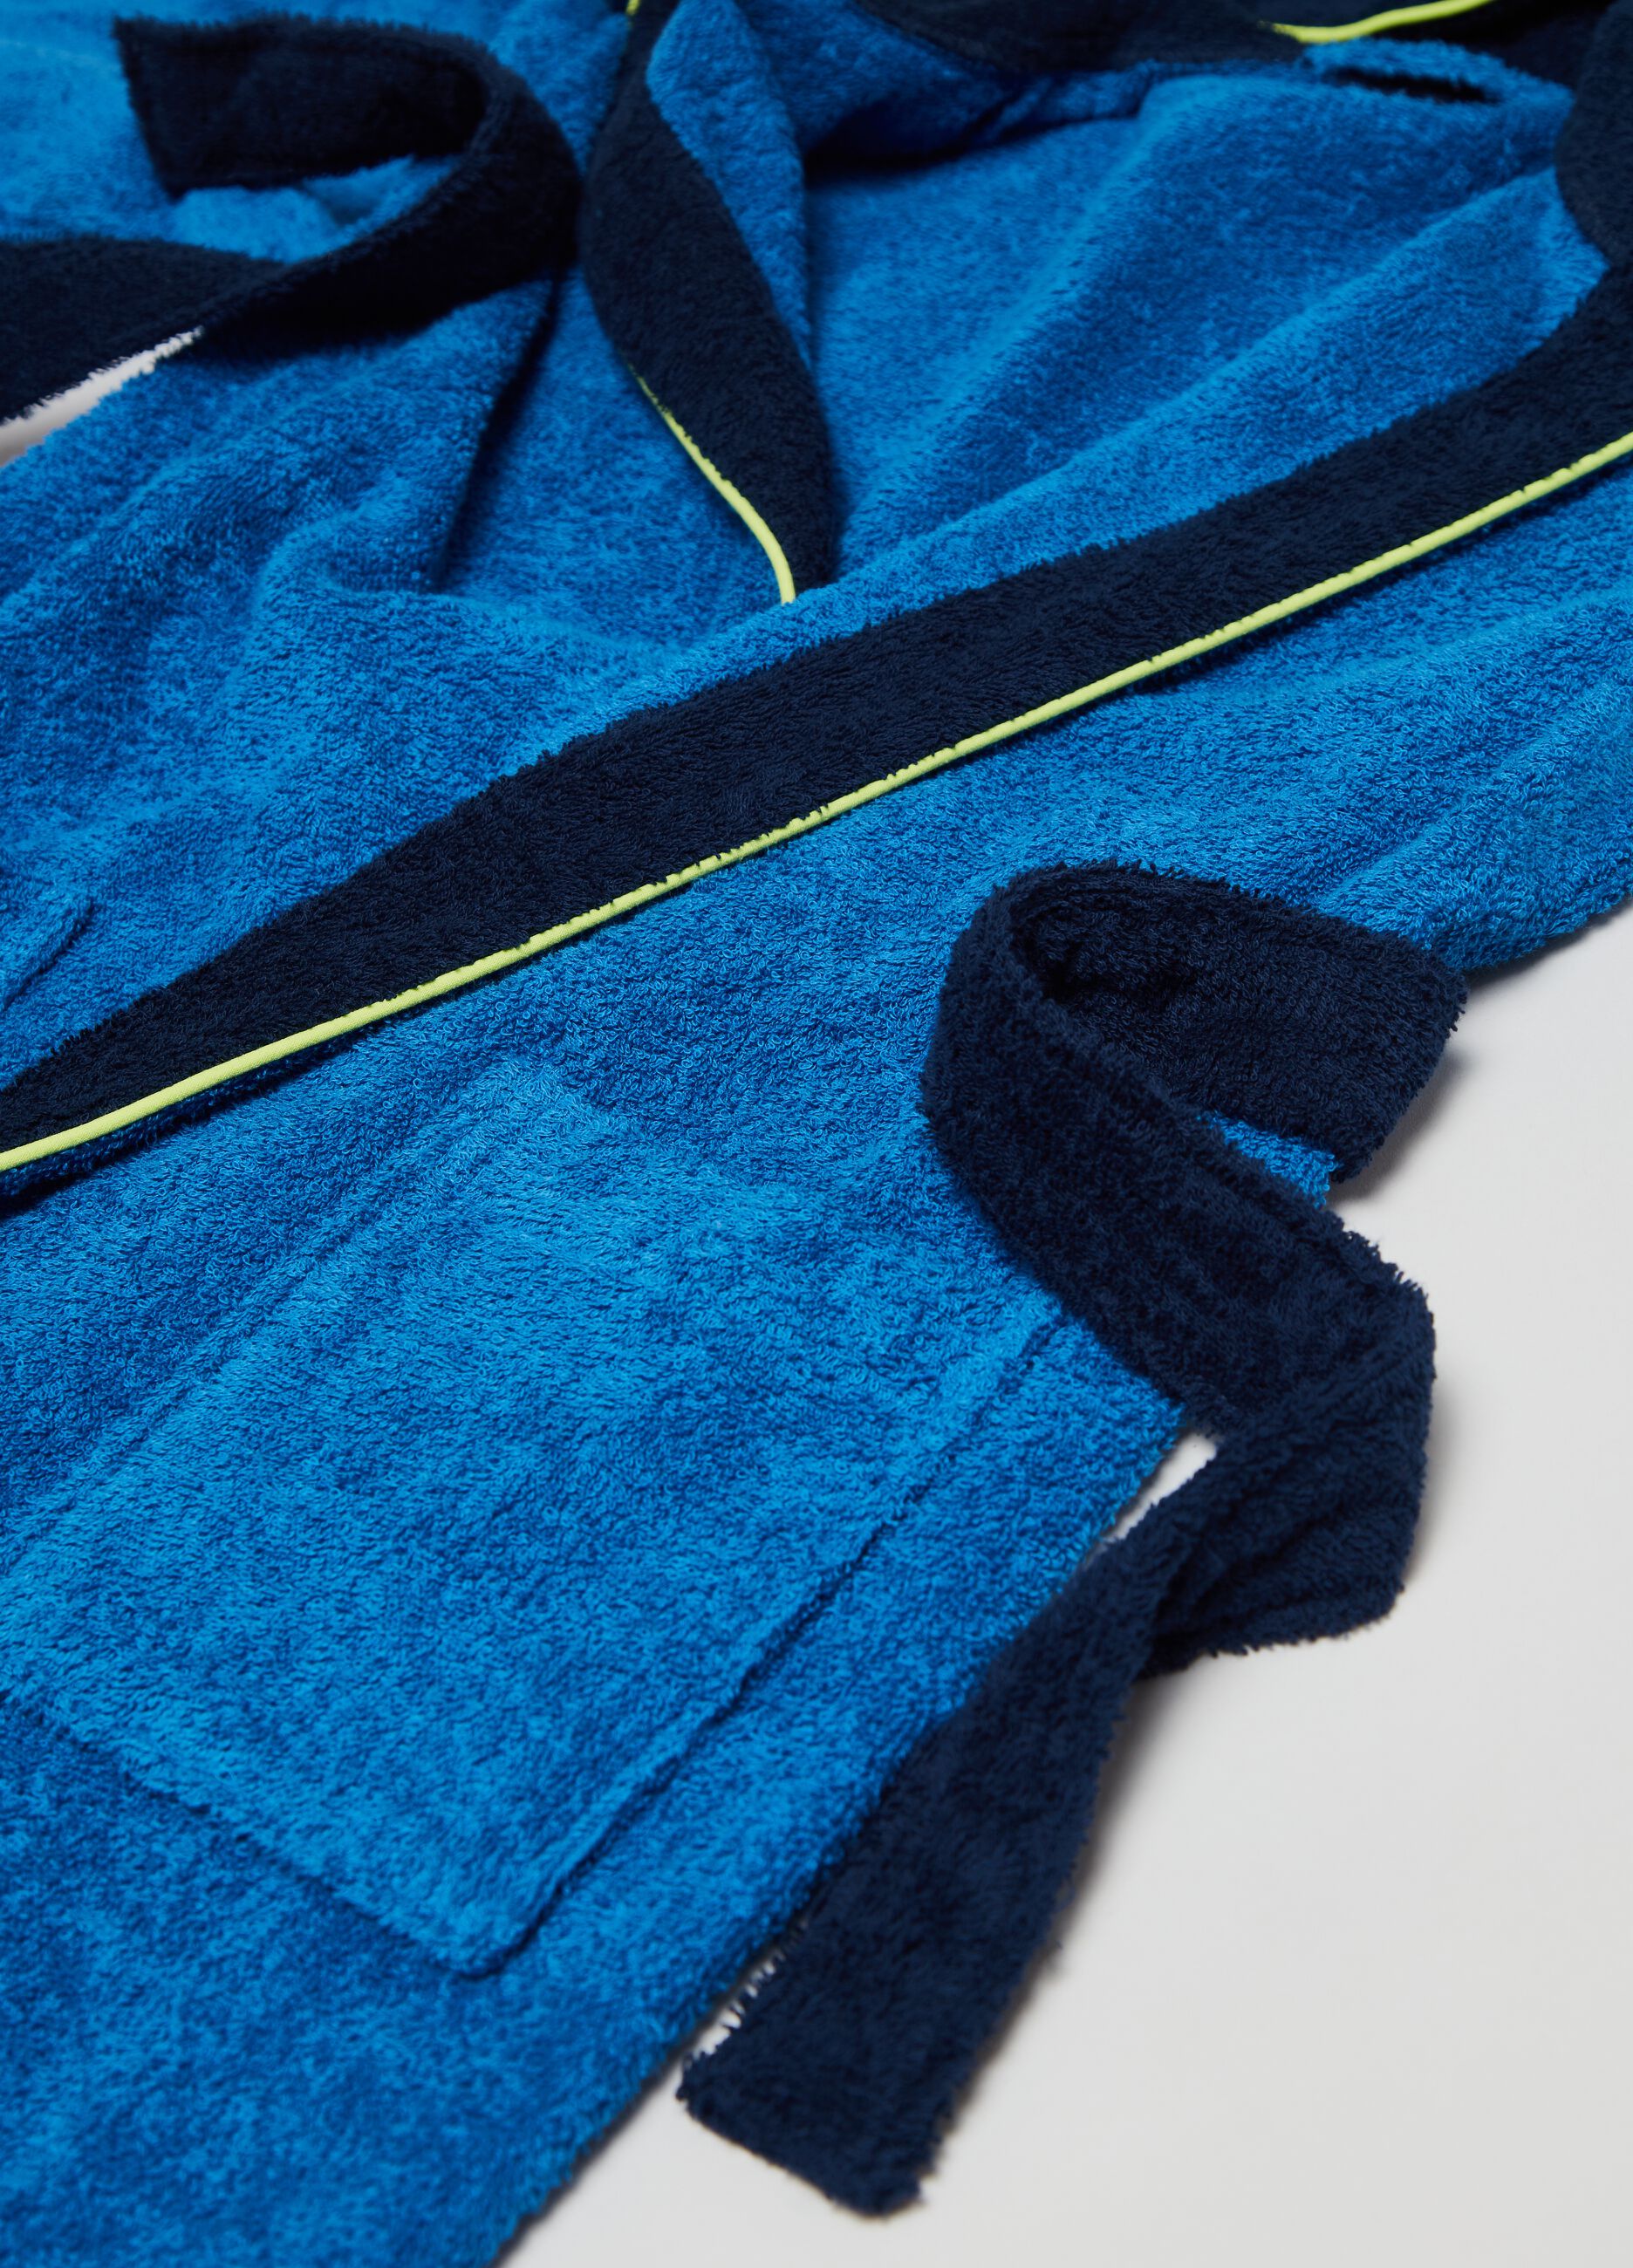 Two-tone cotton bathrobe